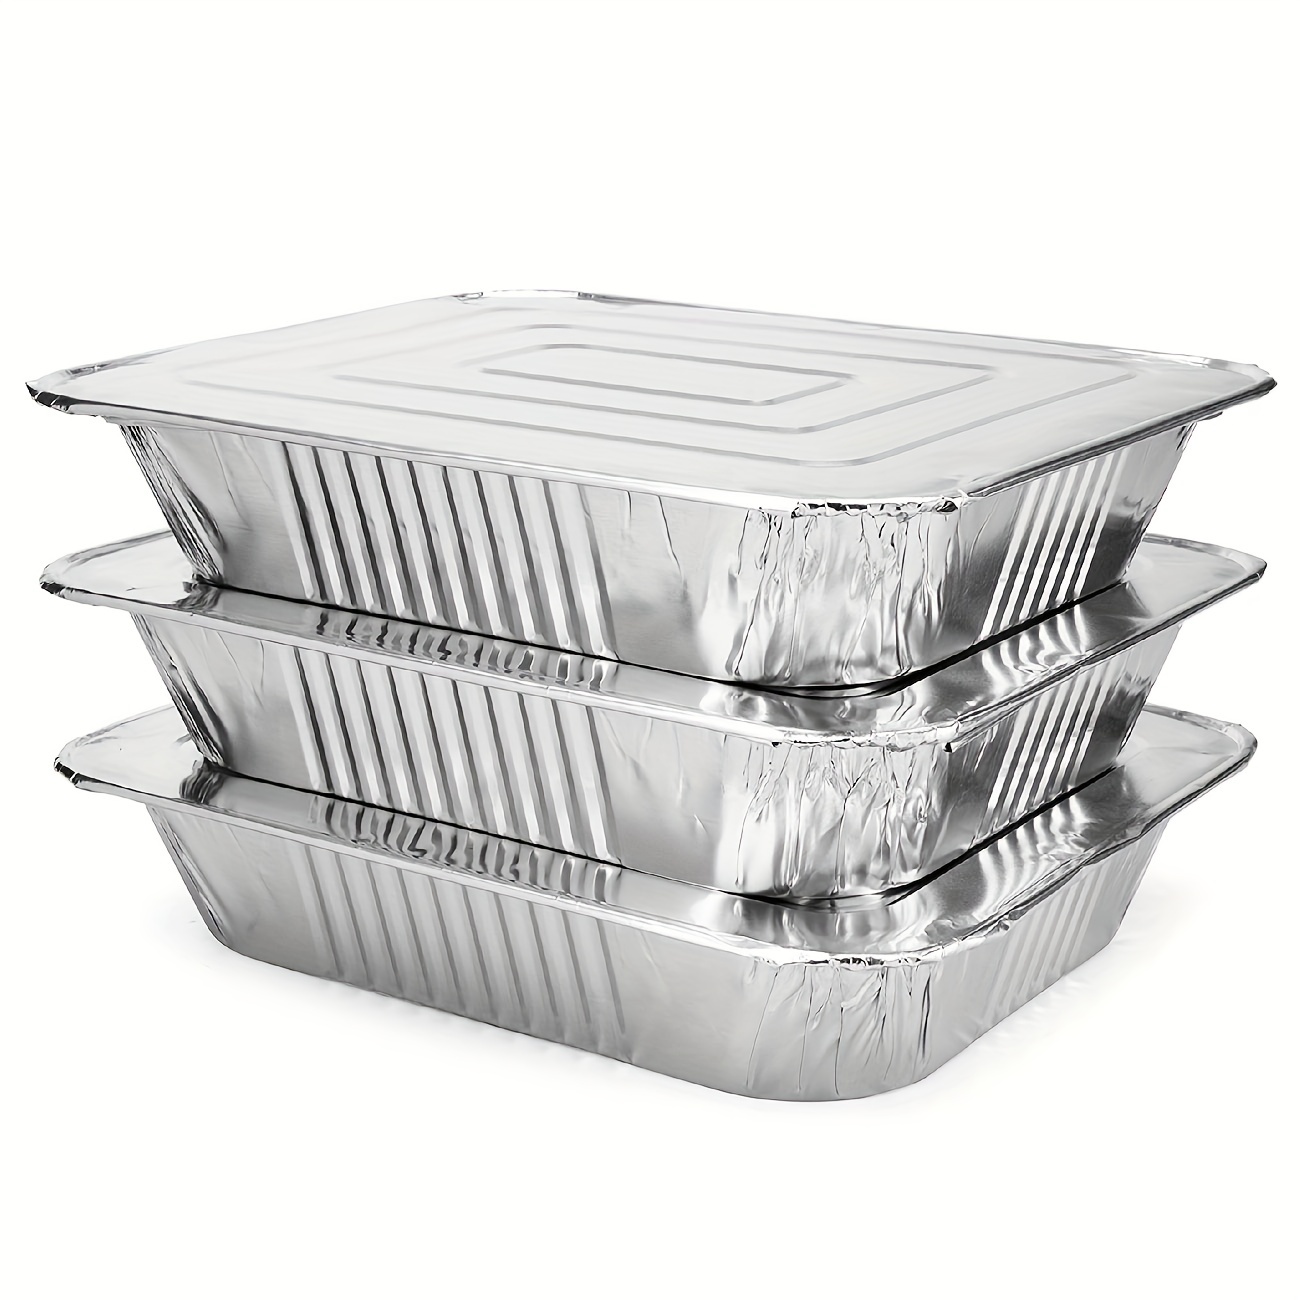 Jiffy Foil Eco-Foil Cook-n-Carry Aluminum 9 x 13 Cake Pans & Lids, 2-Pack